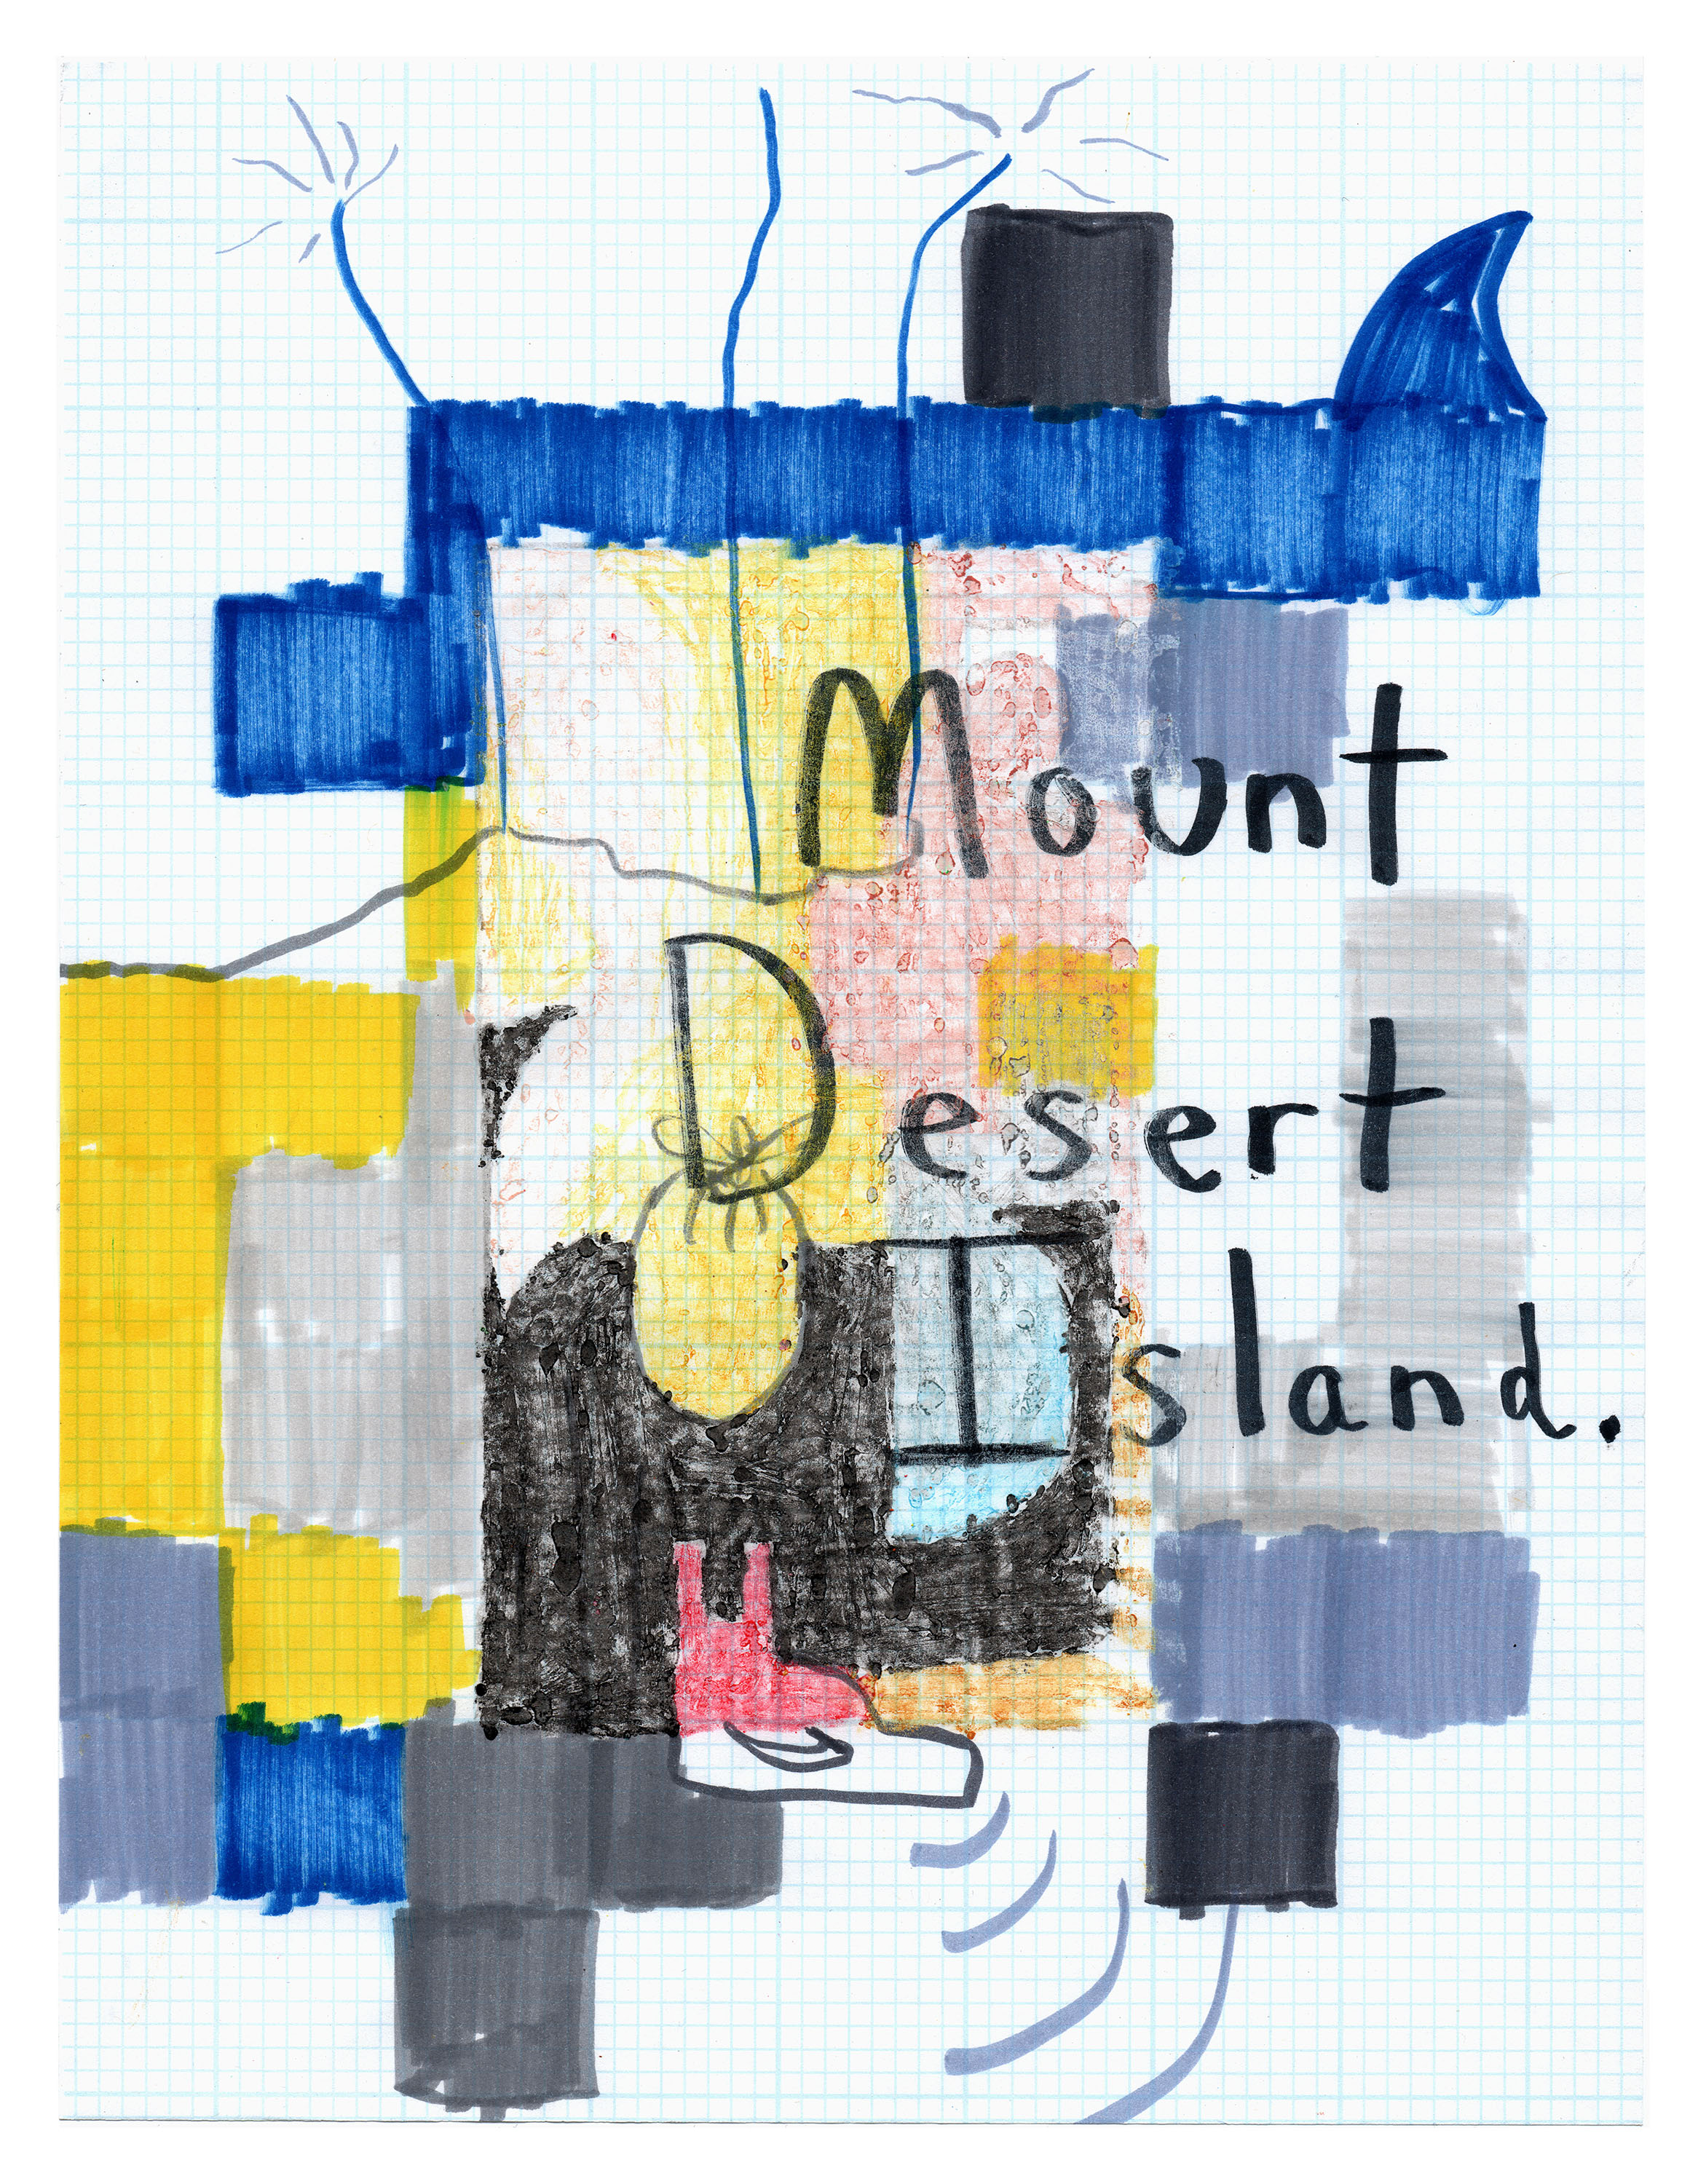 Mount Desert Island.jpg